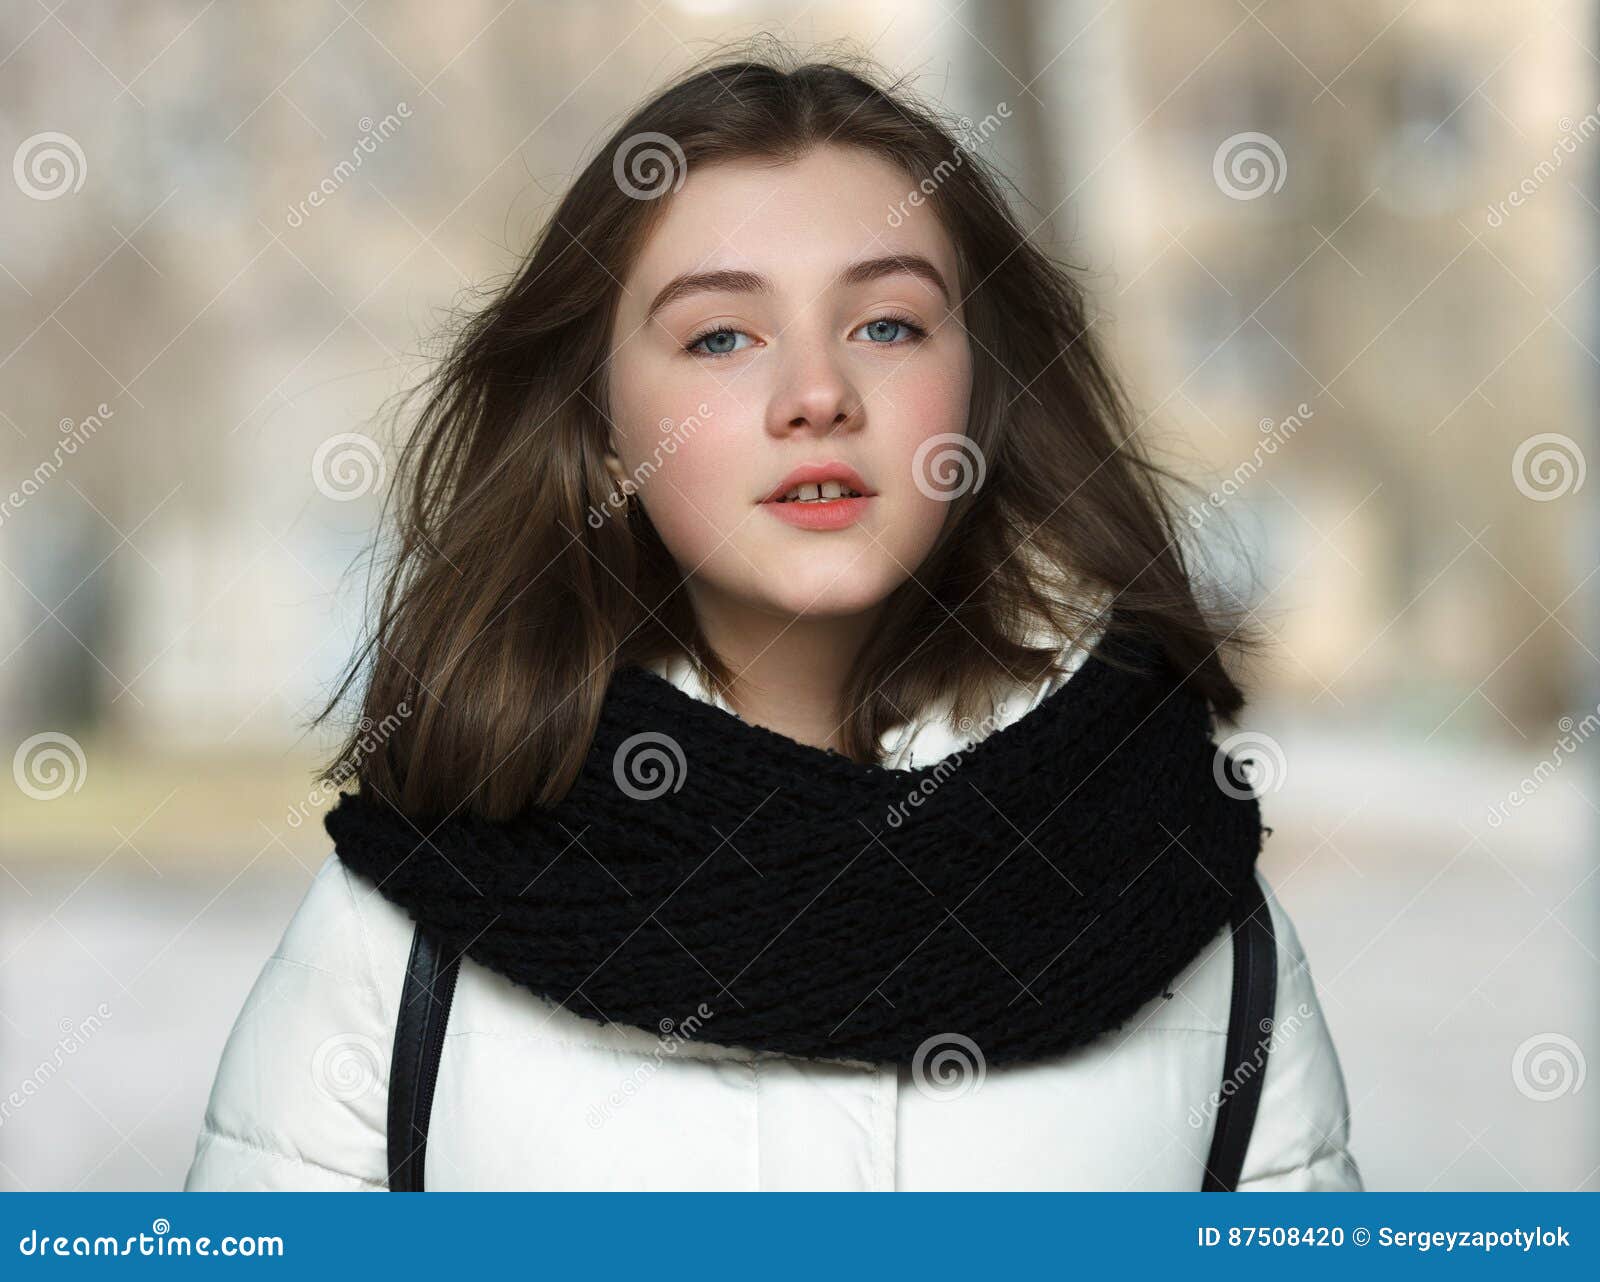 Cold Season Young Adorable Woman Close Up Portrait Lifestyle Concept ...